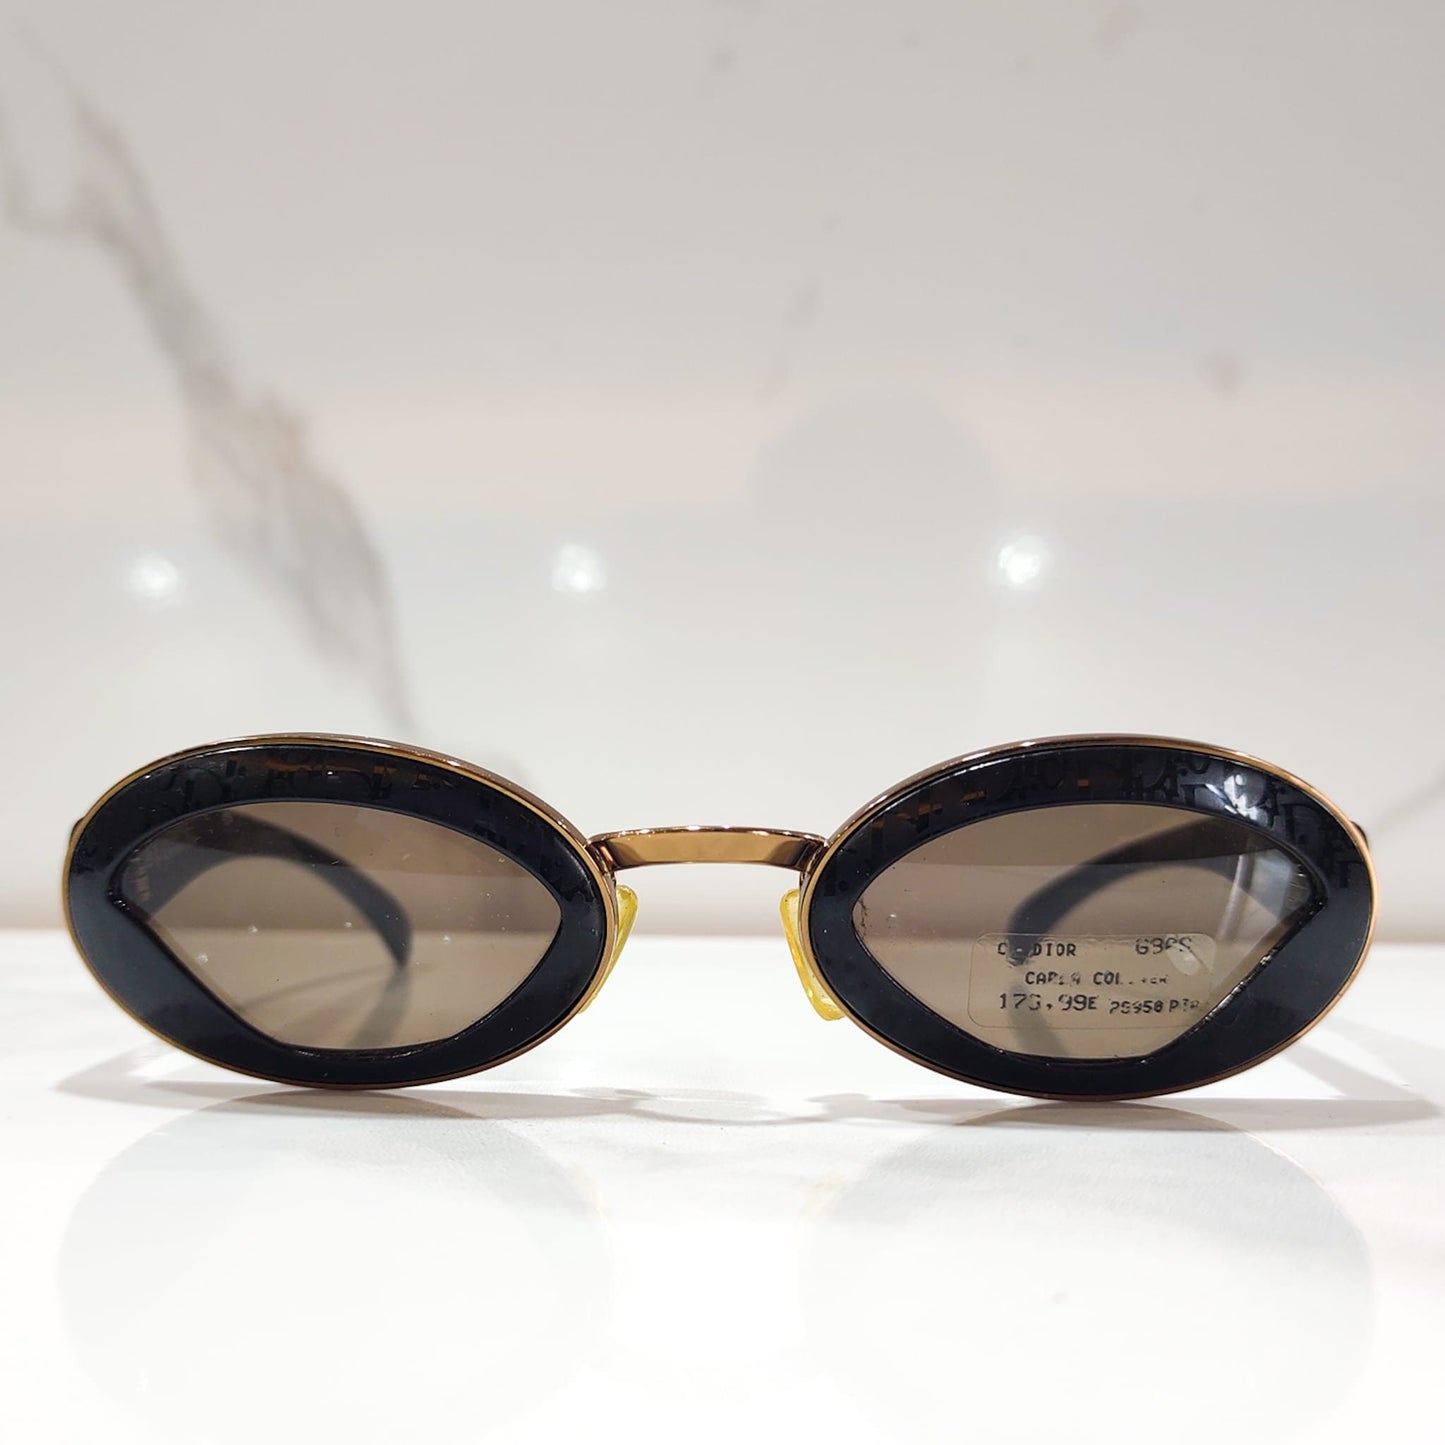 Dior Pin UP Rari occhiali da sole Limited Edition vintage occhiali lunetta brille